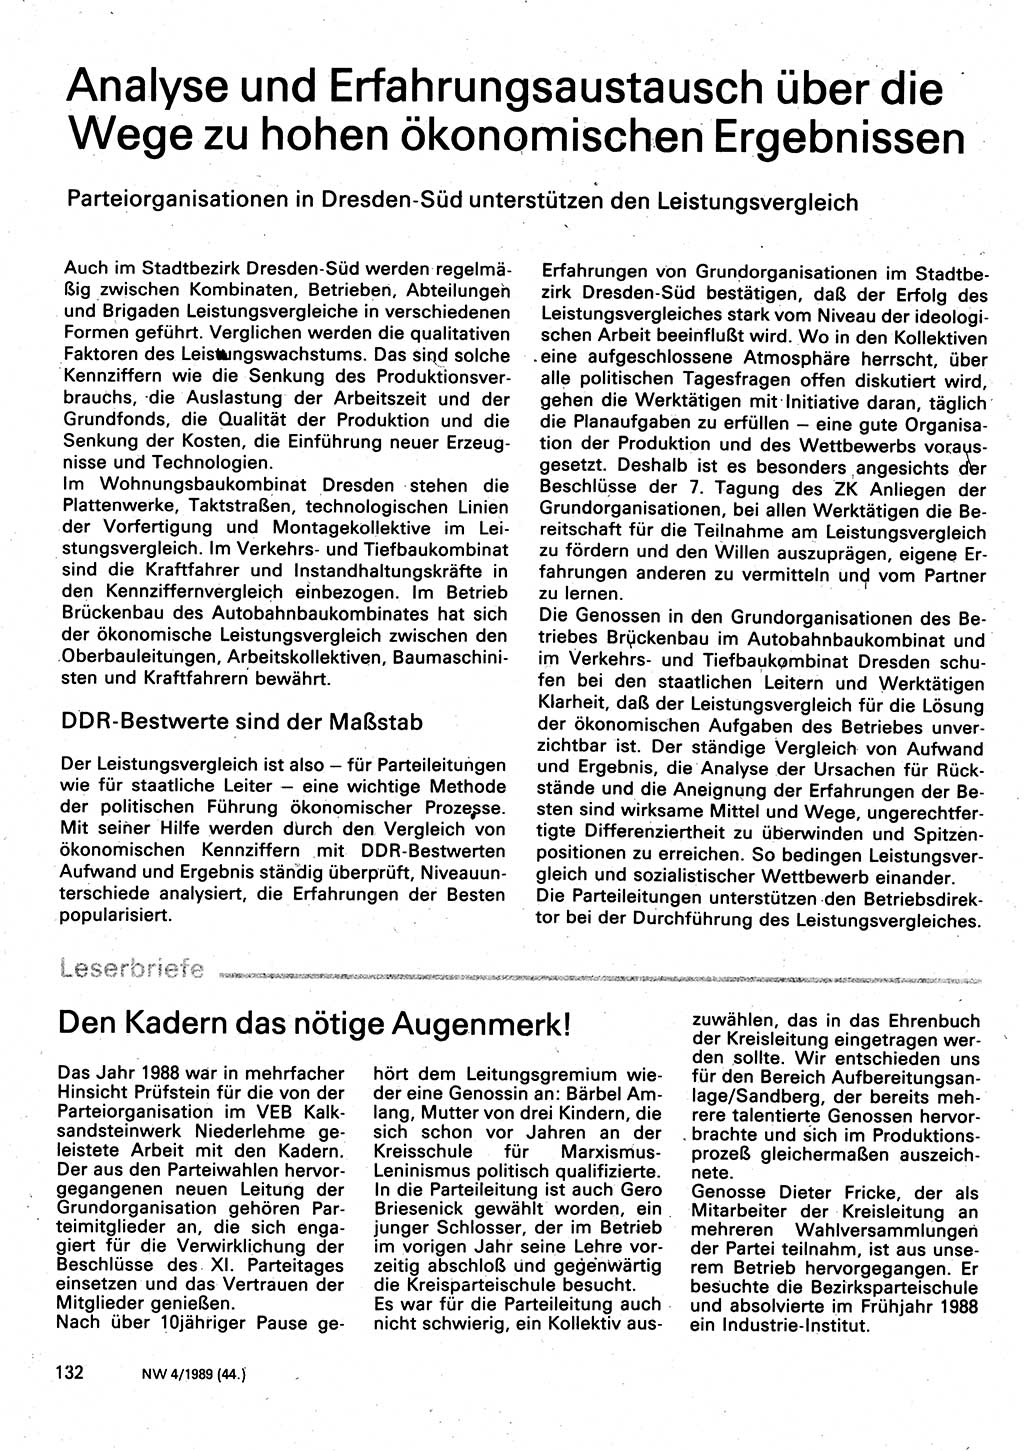 Neuer Weg (NW), Organ des Zentralkomitees (ZK) der SED (Sozialistische Einheitspartei Deutschlands) für Fragen des Parteilebens, 44. Jahrgang [Deutsche Demokratische Republik (DDR)] 1989, Seite 132 (NW ZK SED DDR 1989, S. 132)